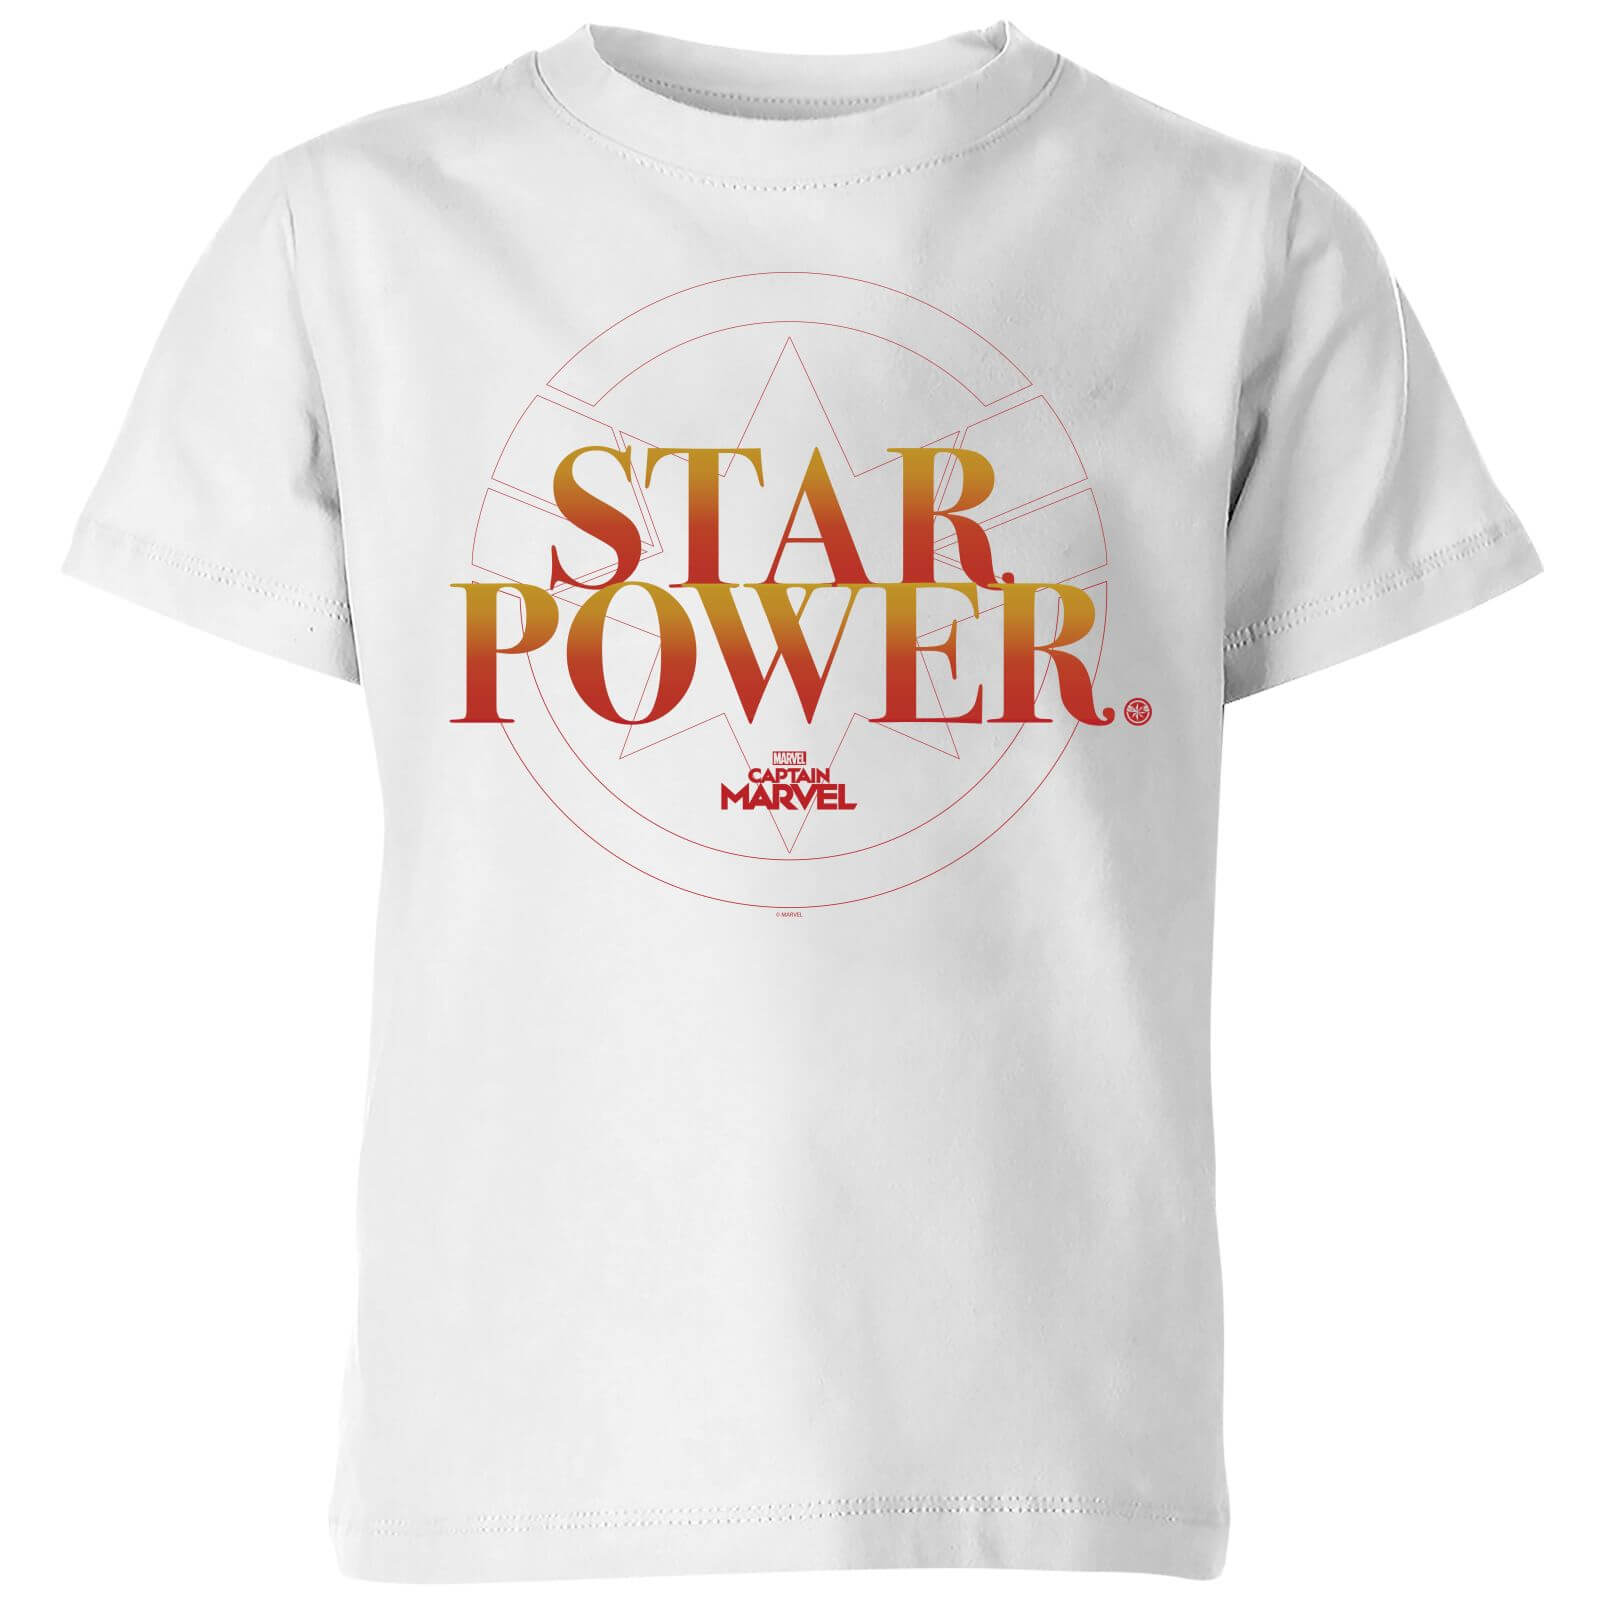 Captain Marvel Star Power Kids' T-Shirt - White - 3-4 Jahre - Weiß